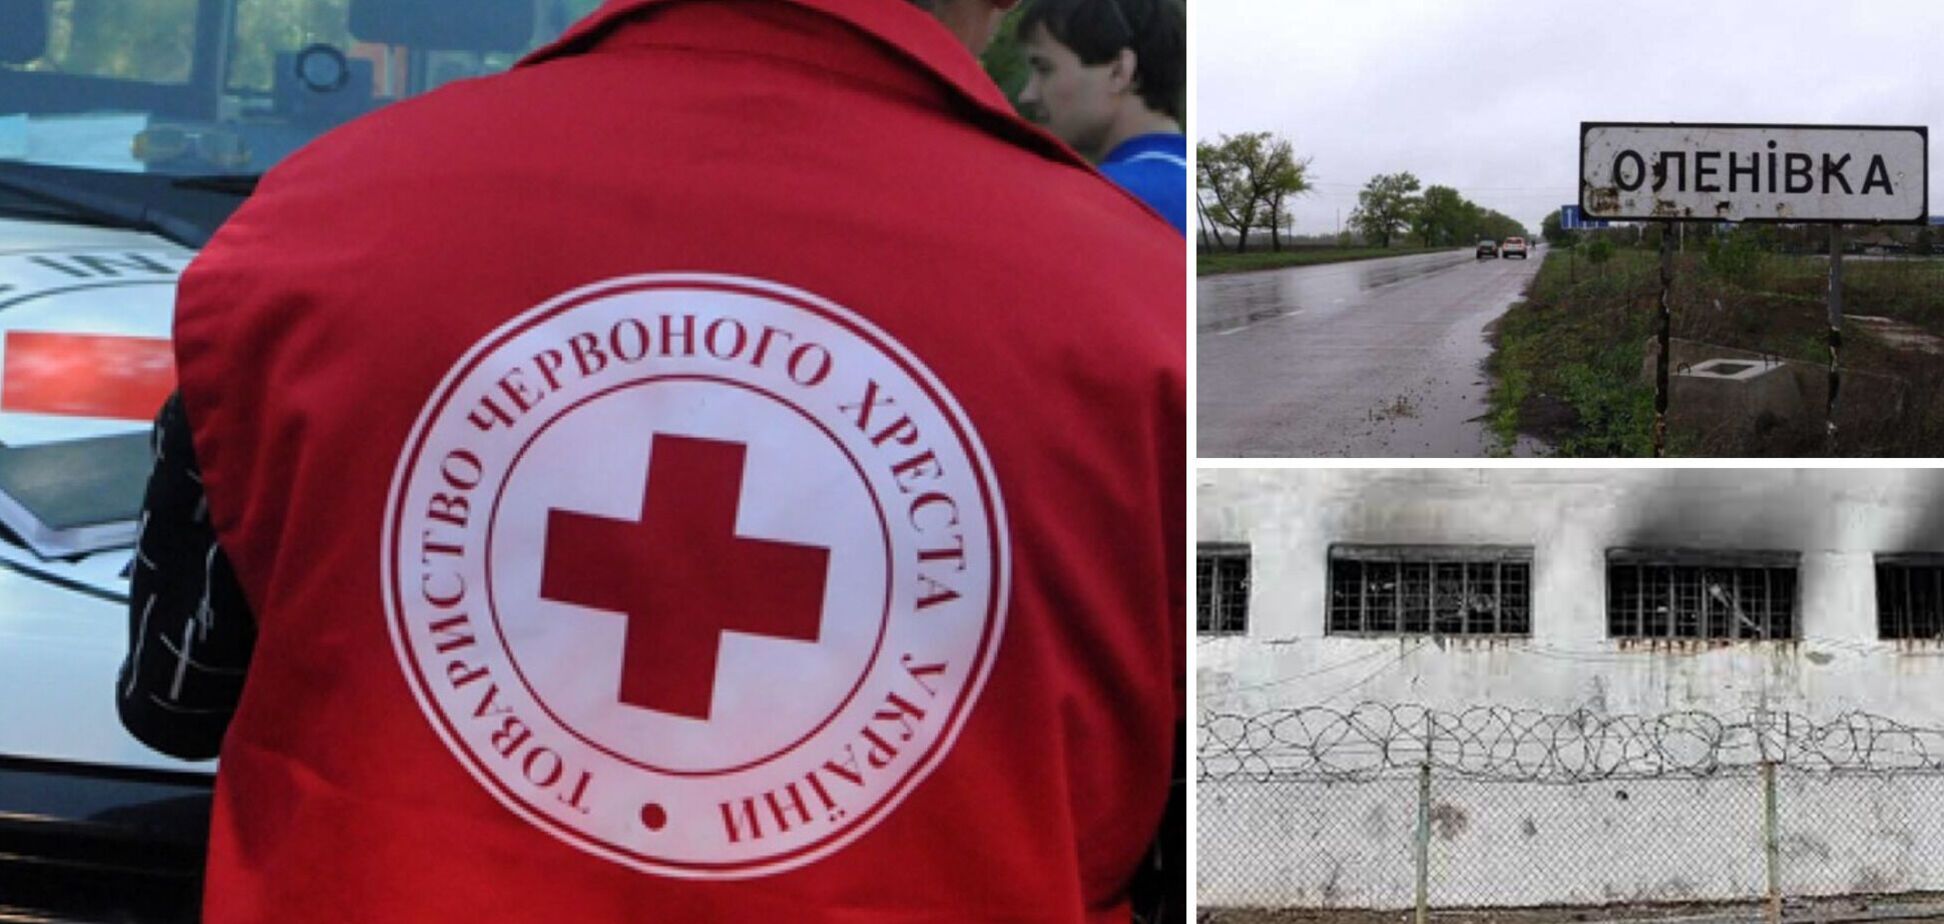 Червоний Хрест про стан військовополонених в Оленівці: пораненим надається допомога, але віч-на-віч поспілкуватися не вдалося  